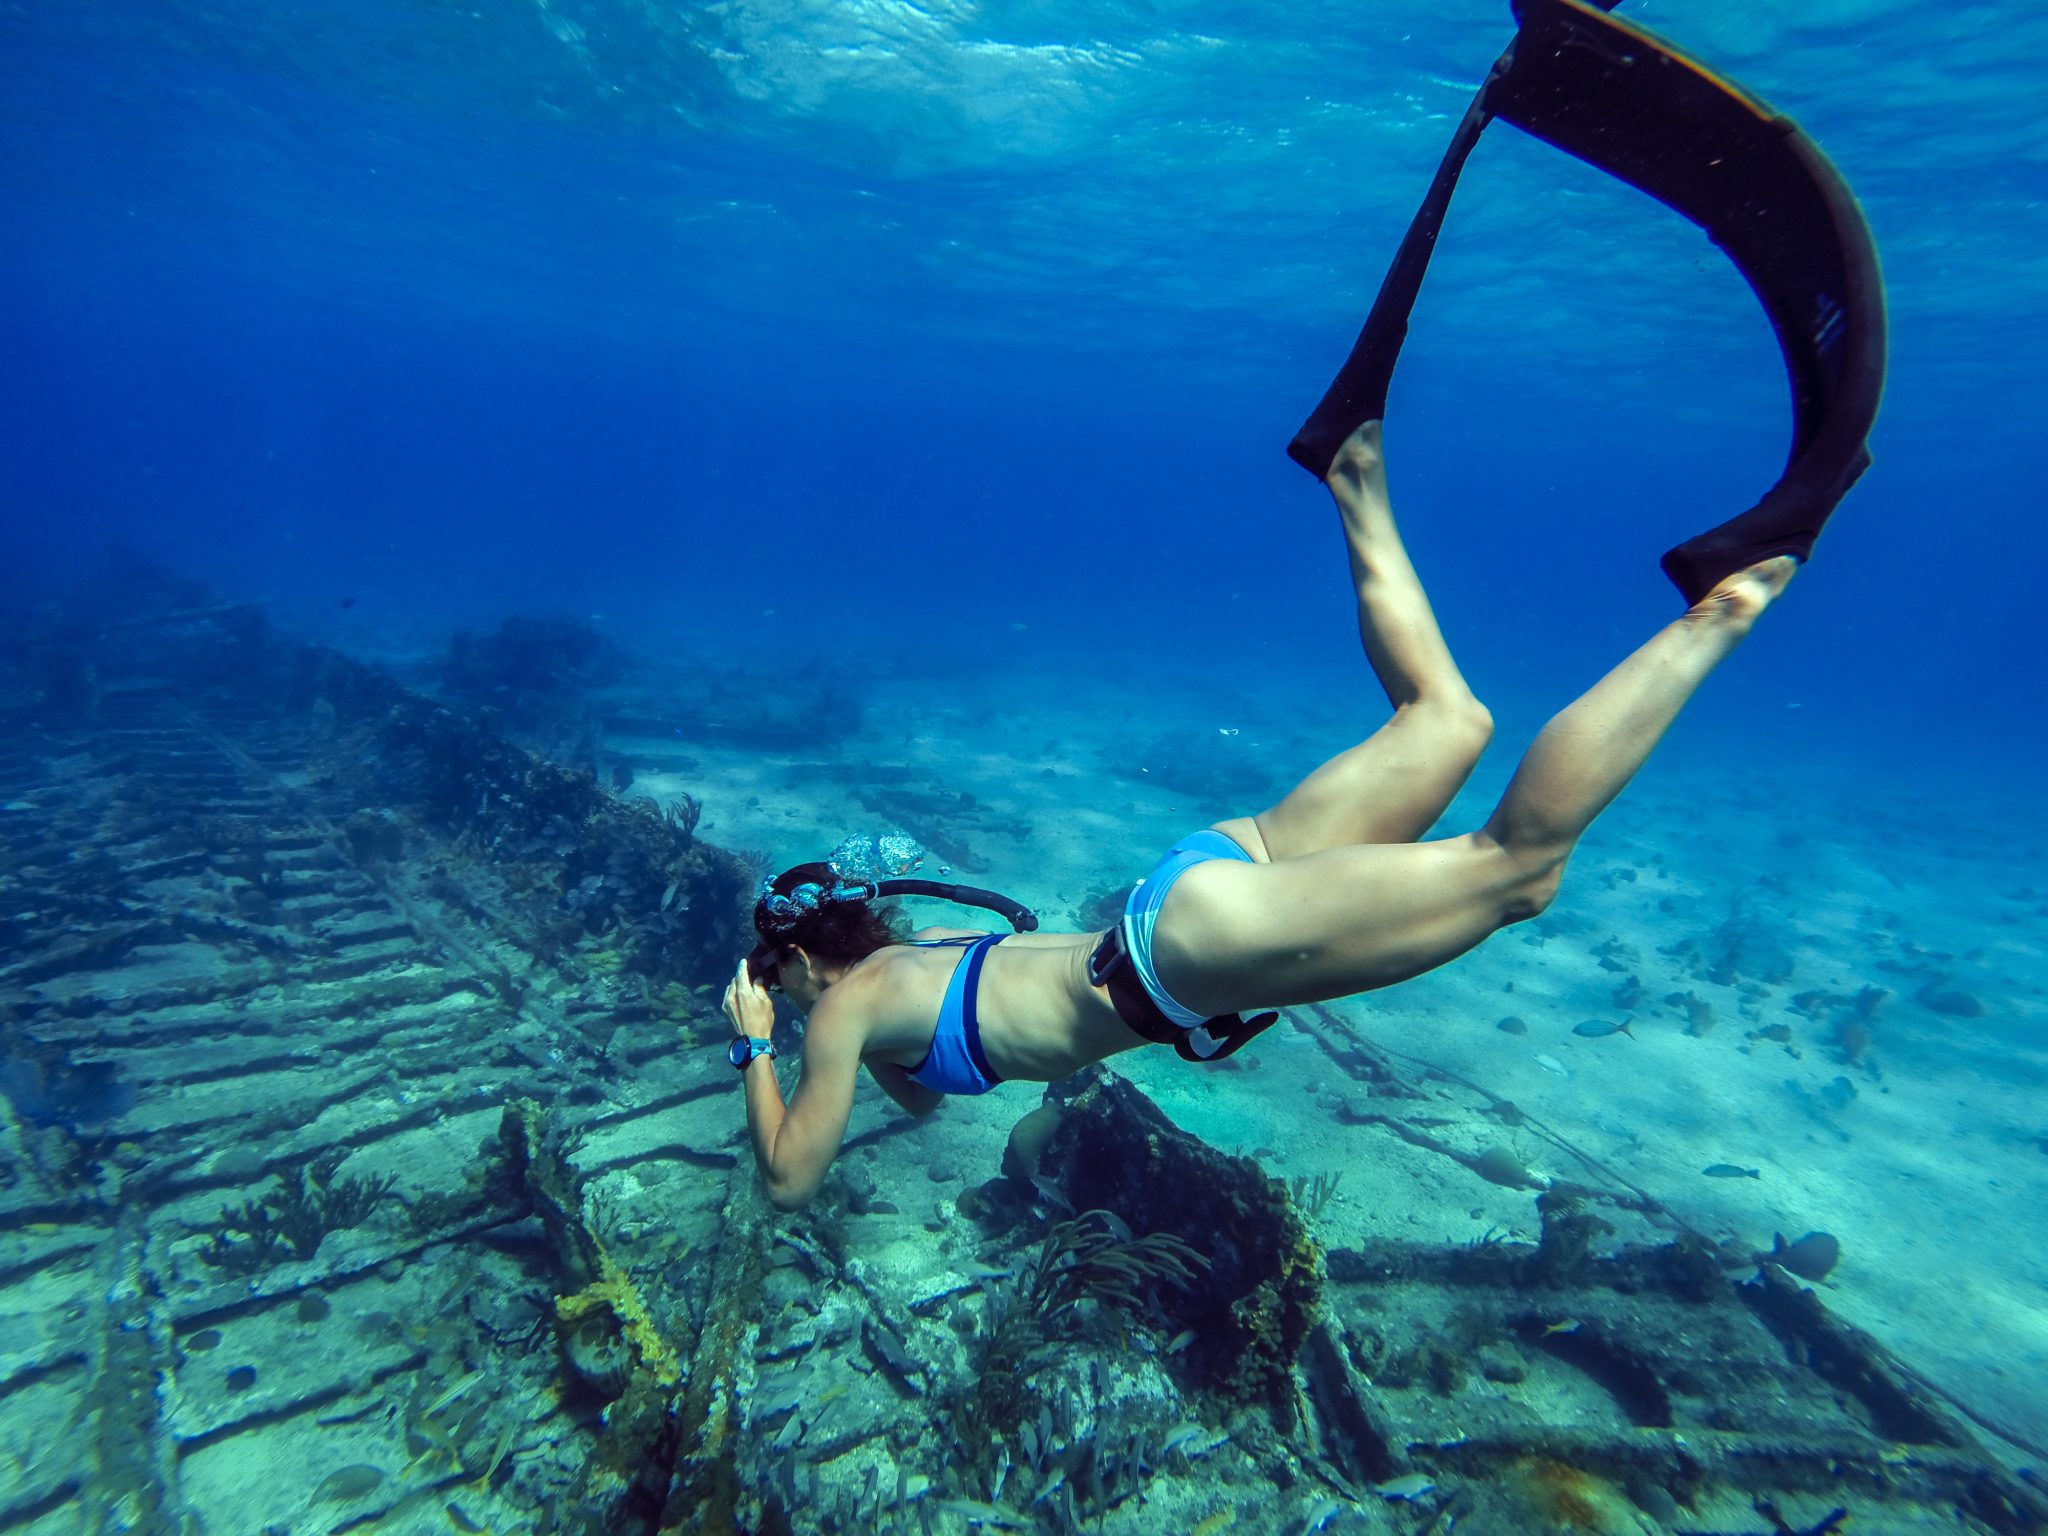 Bahamas - NO freediving after diving